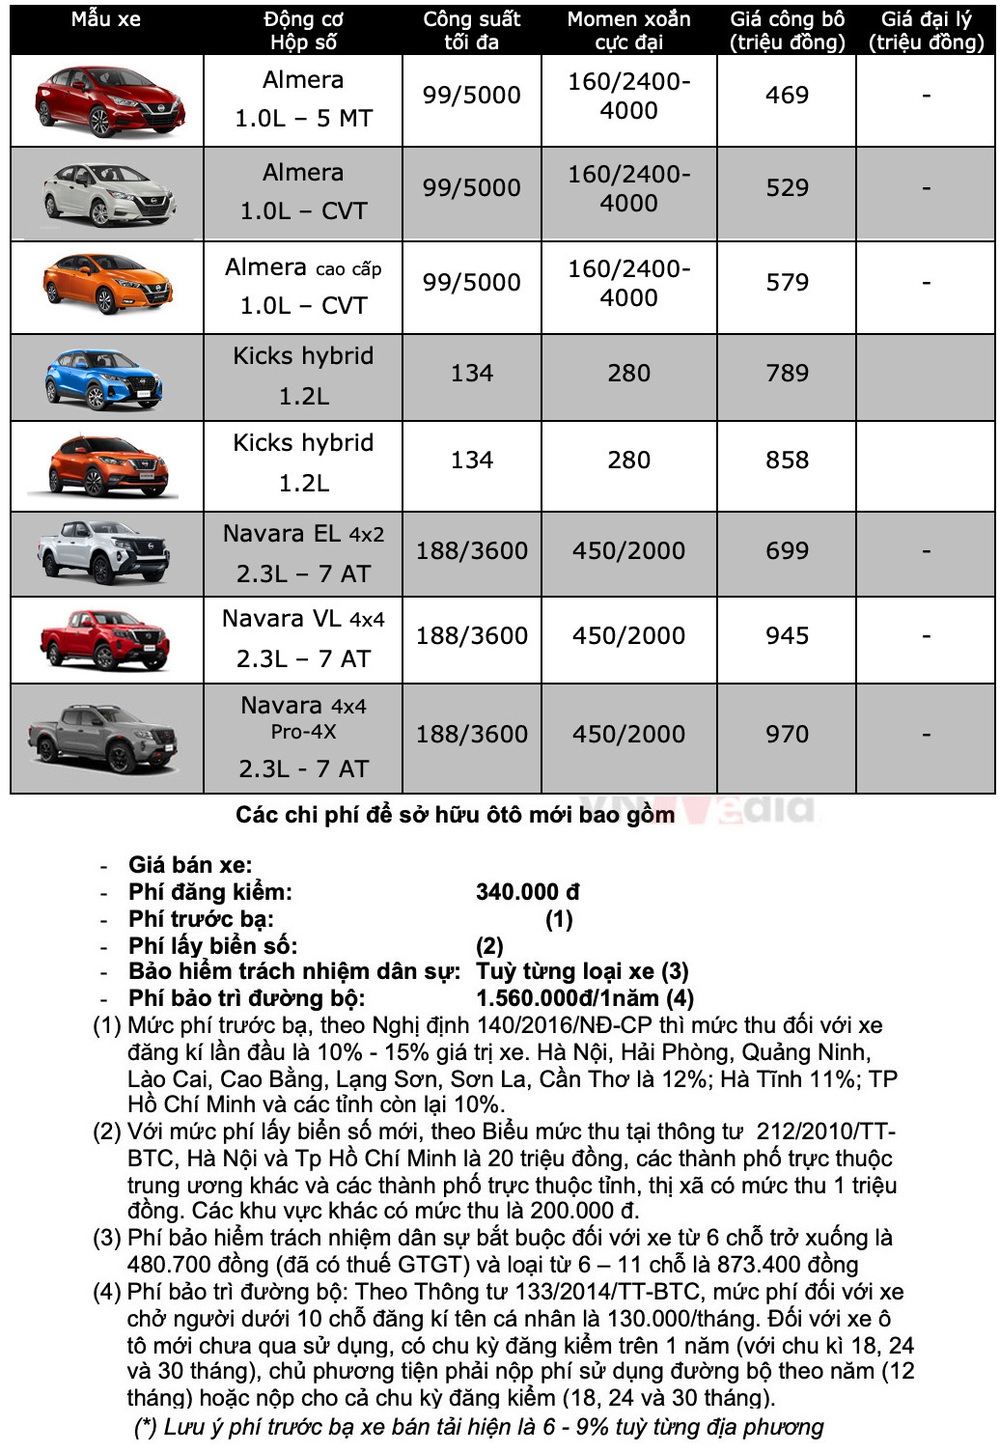 Bảng giá xe Nissan tháng 4: Nissan Almera được ưu đãi hơn 70 triệu đồng - Ảnh 2.